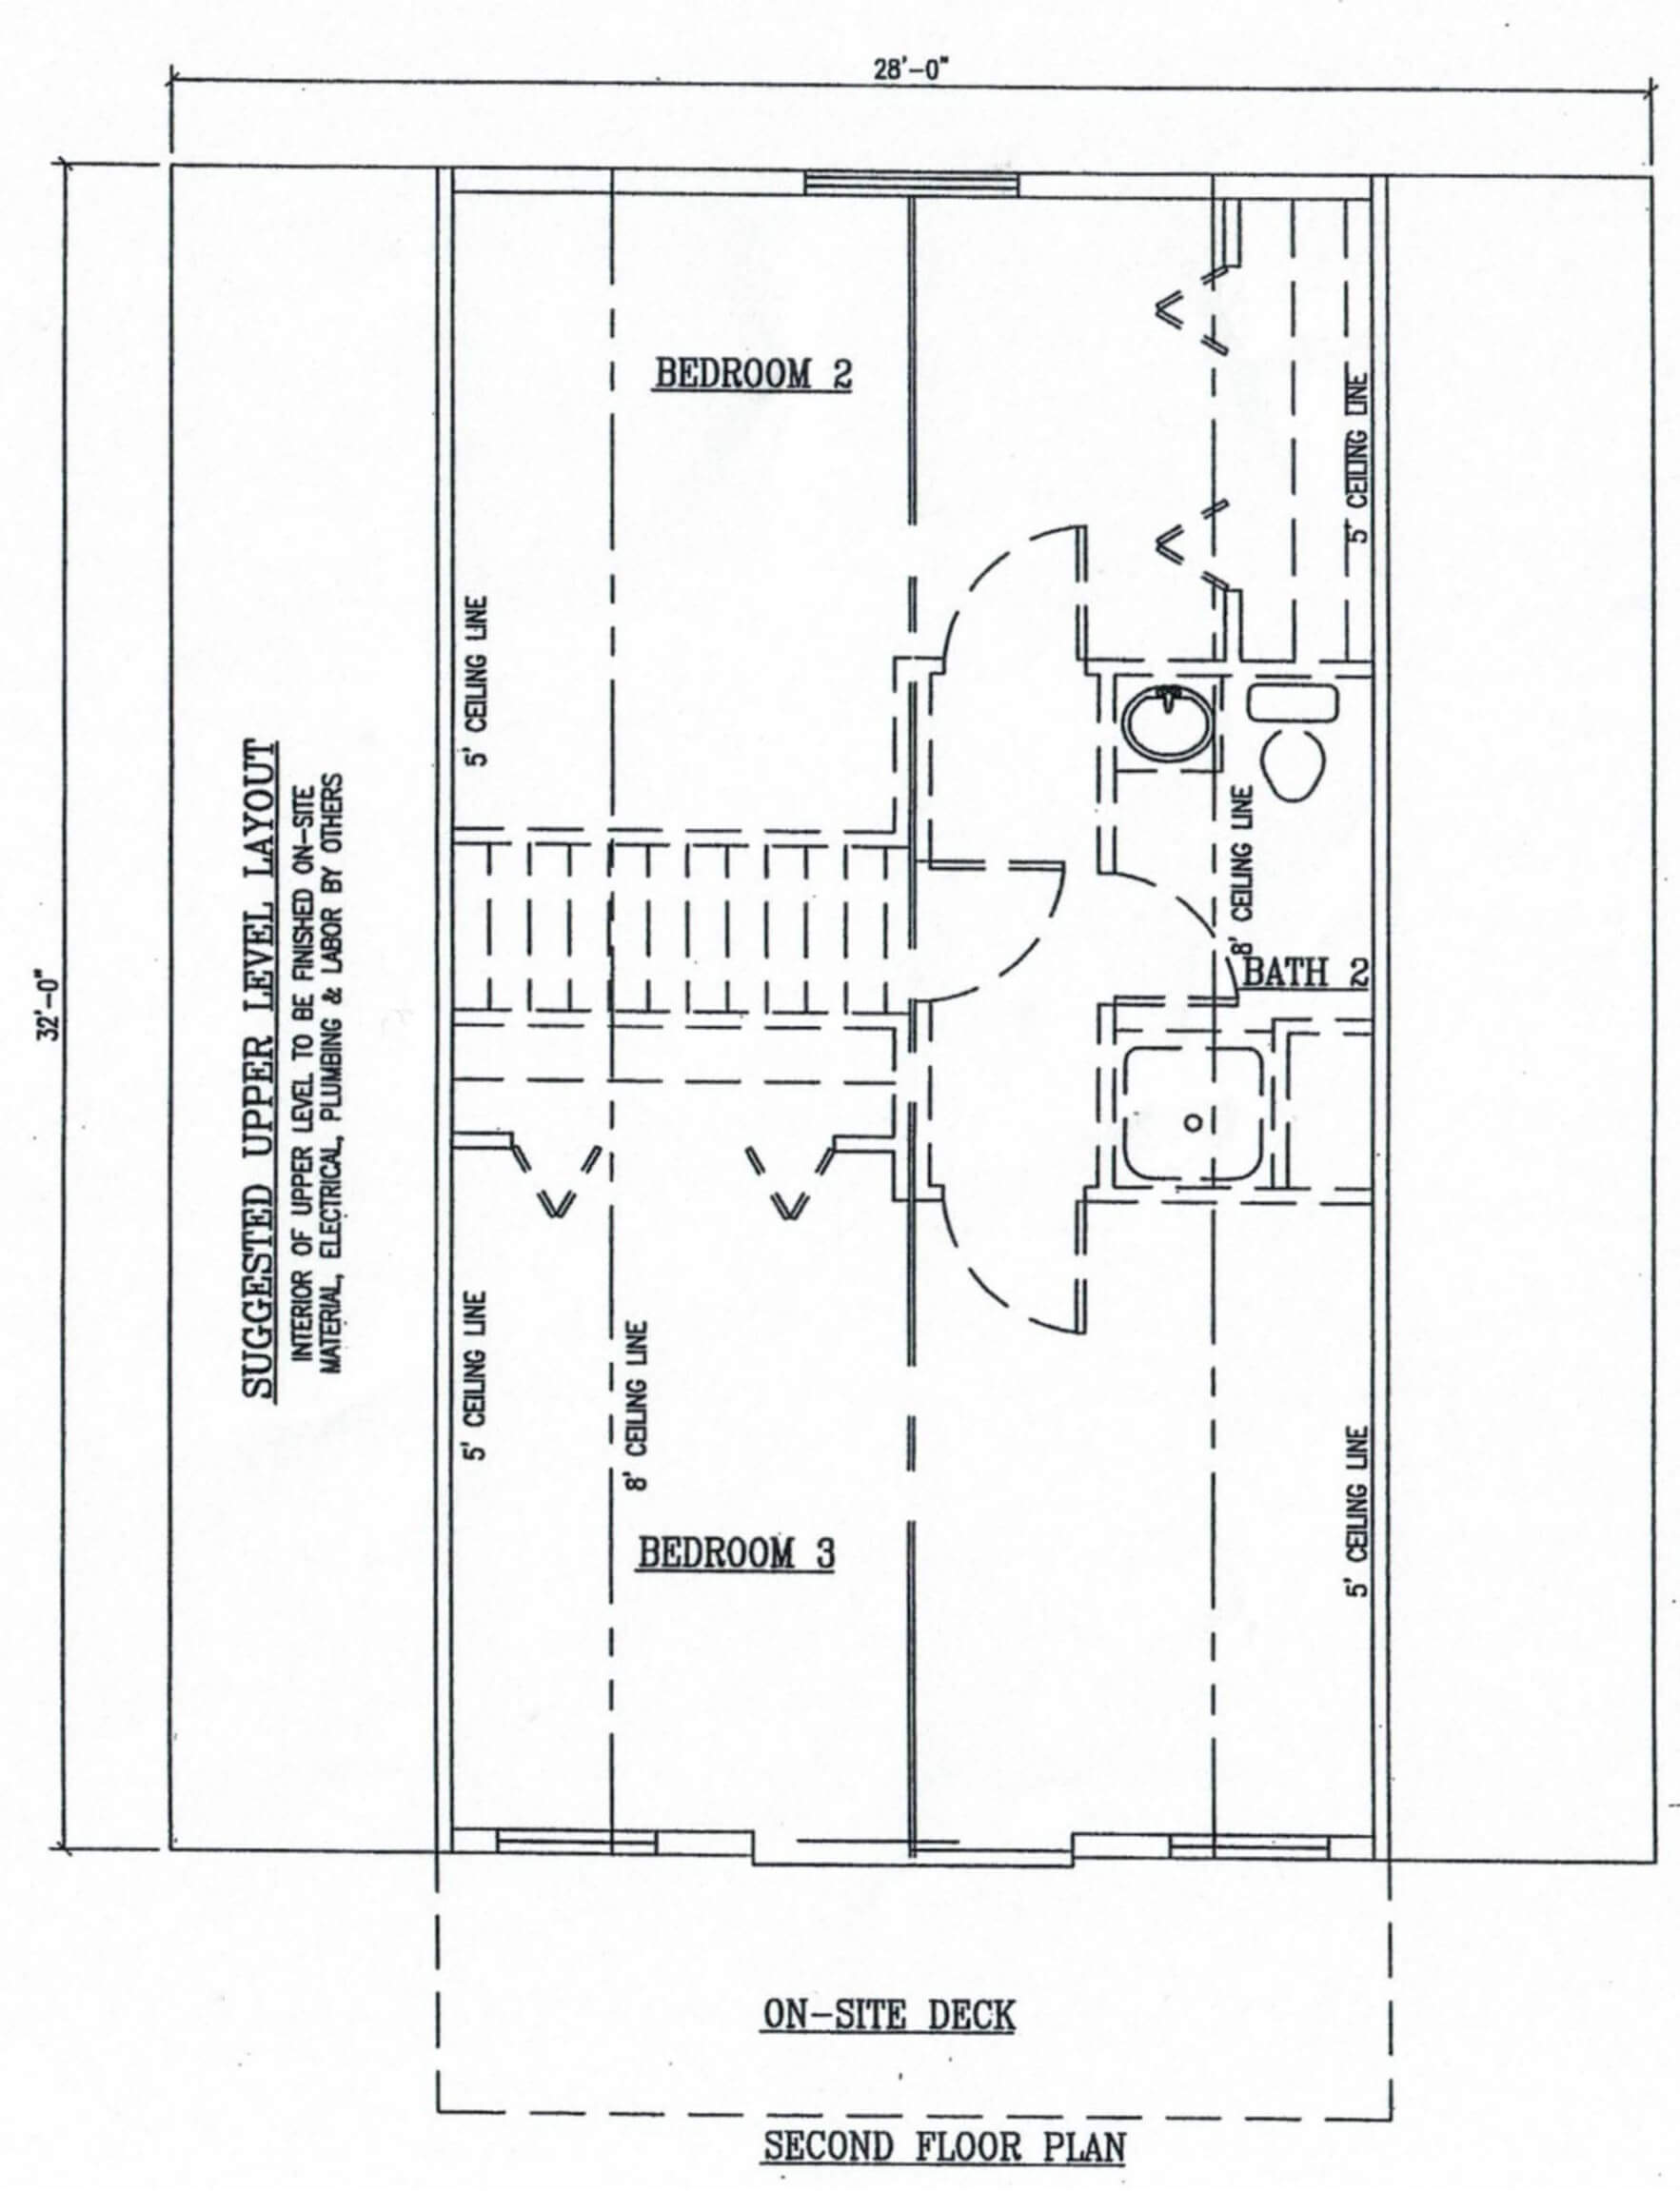 Second-Level/Upper Floor Plan